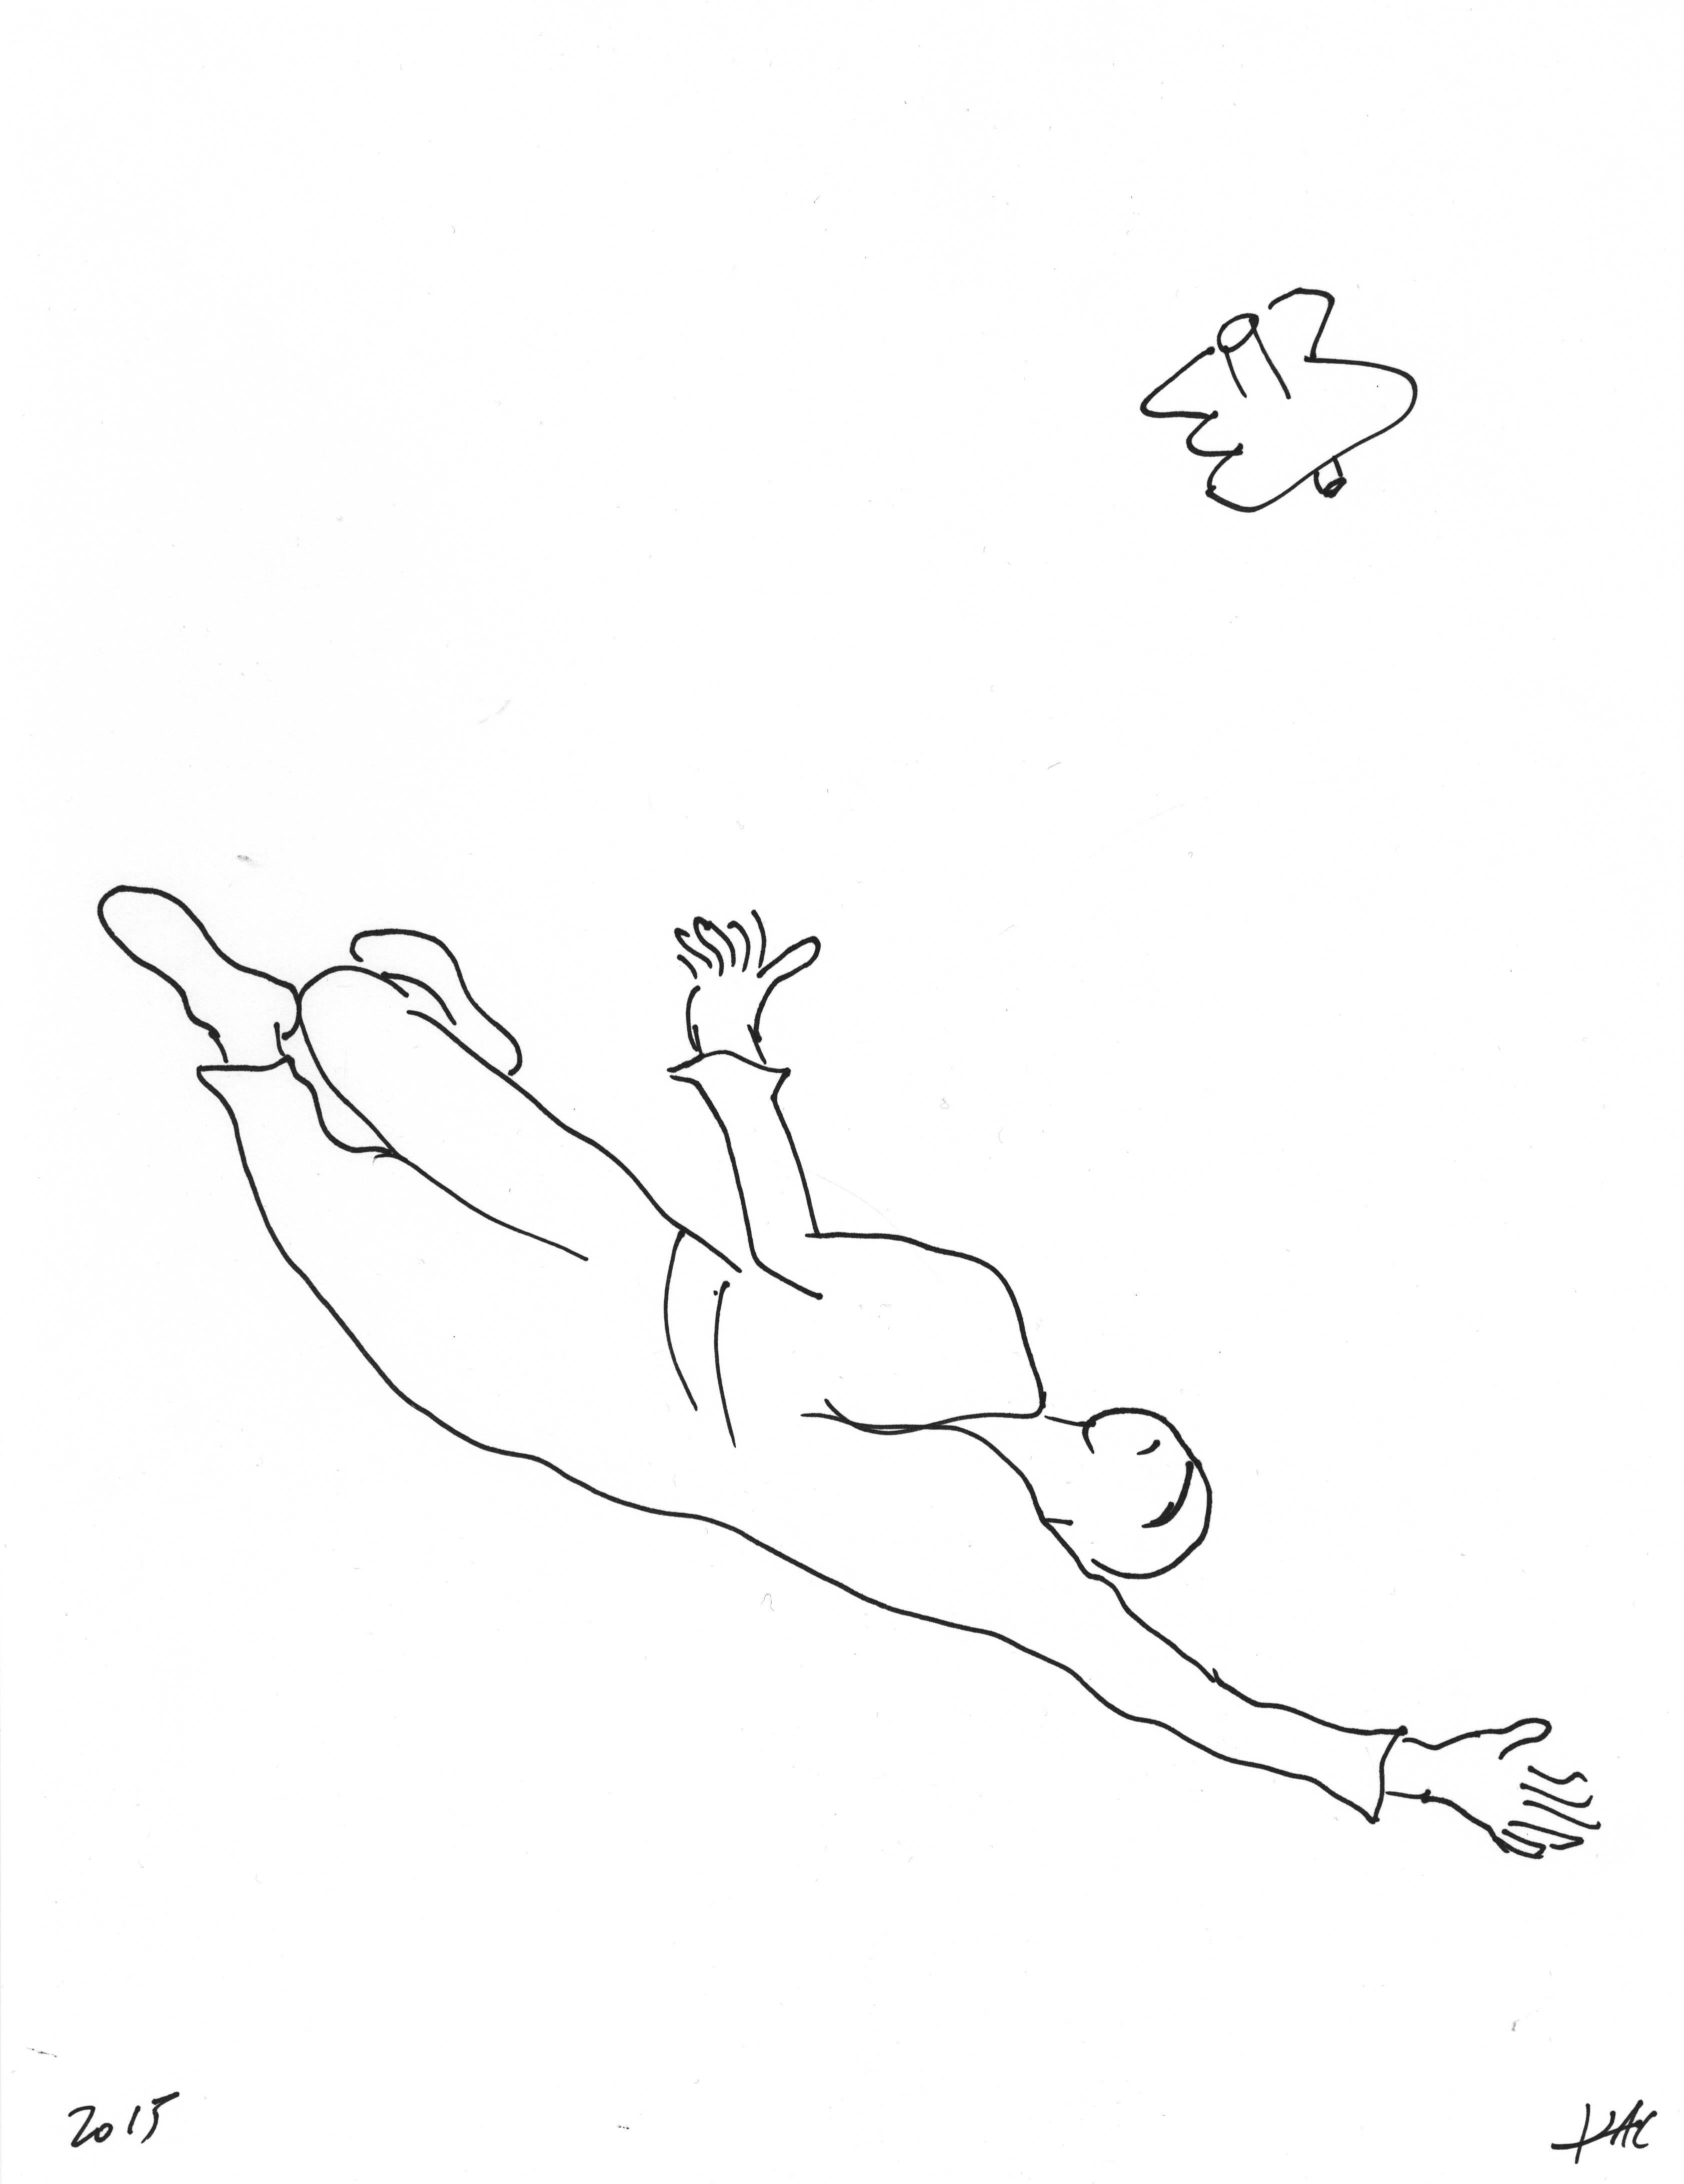 Eduardo Kac Abstract Drawing - Performance pour un astronaute, une paire de ciseaux et deux feuilles de papier 